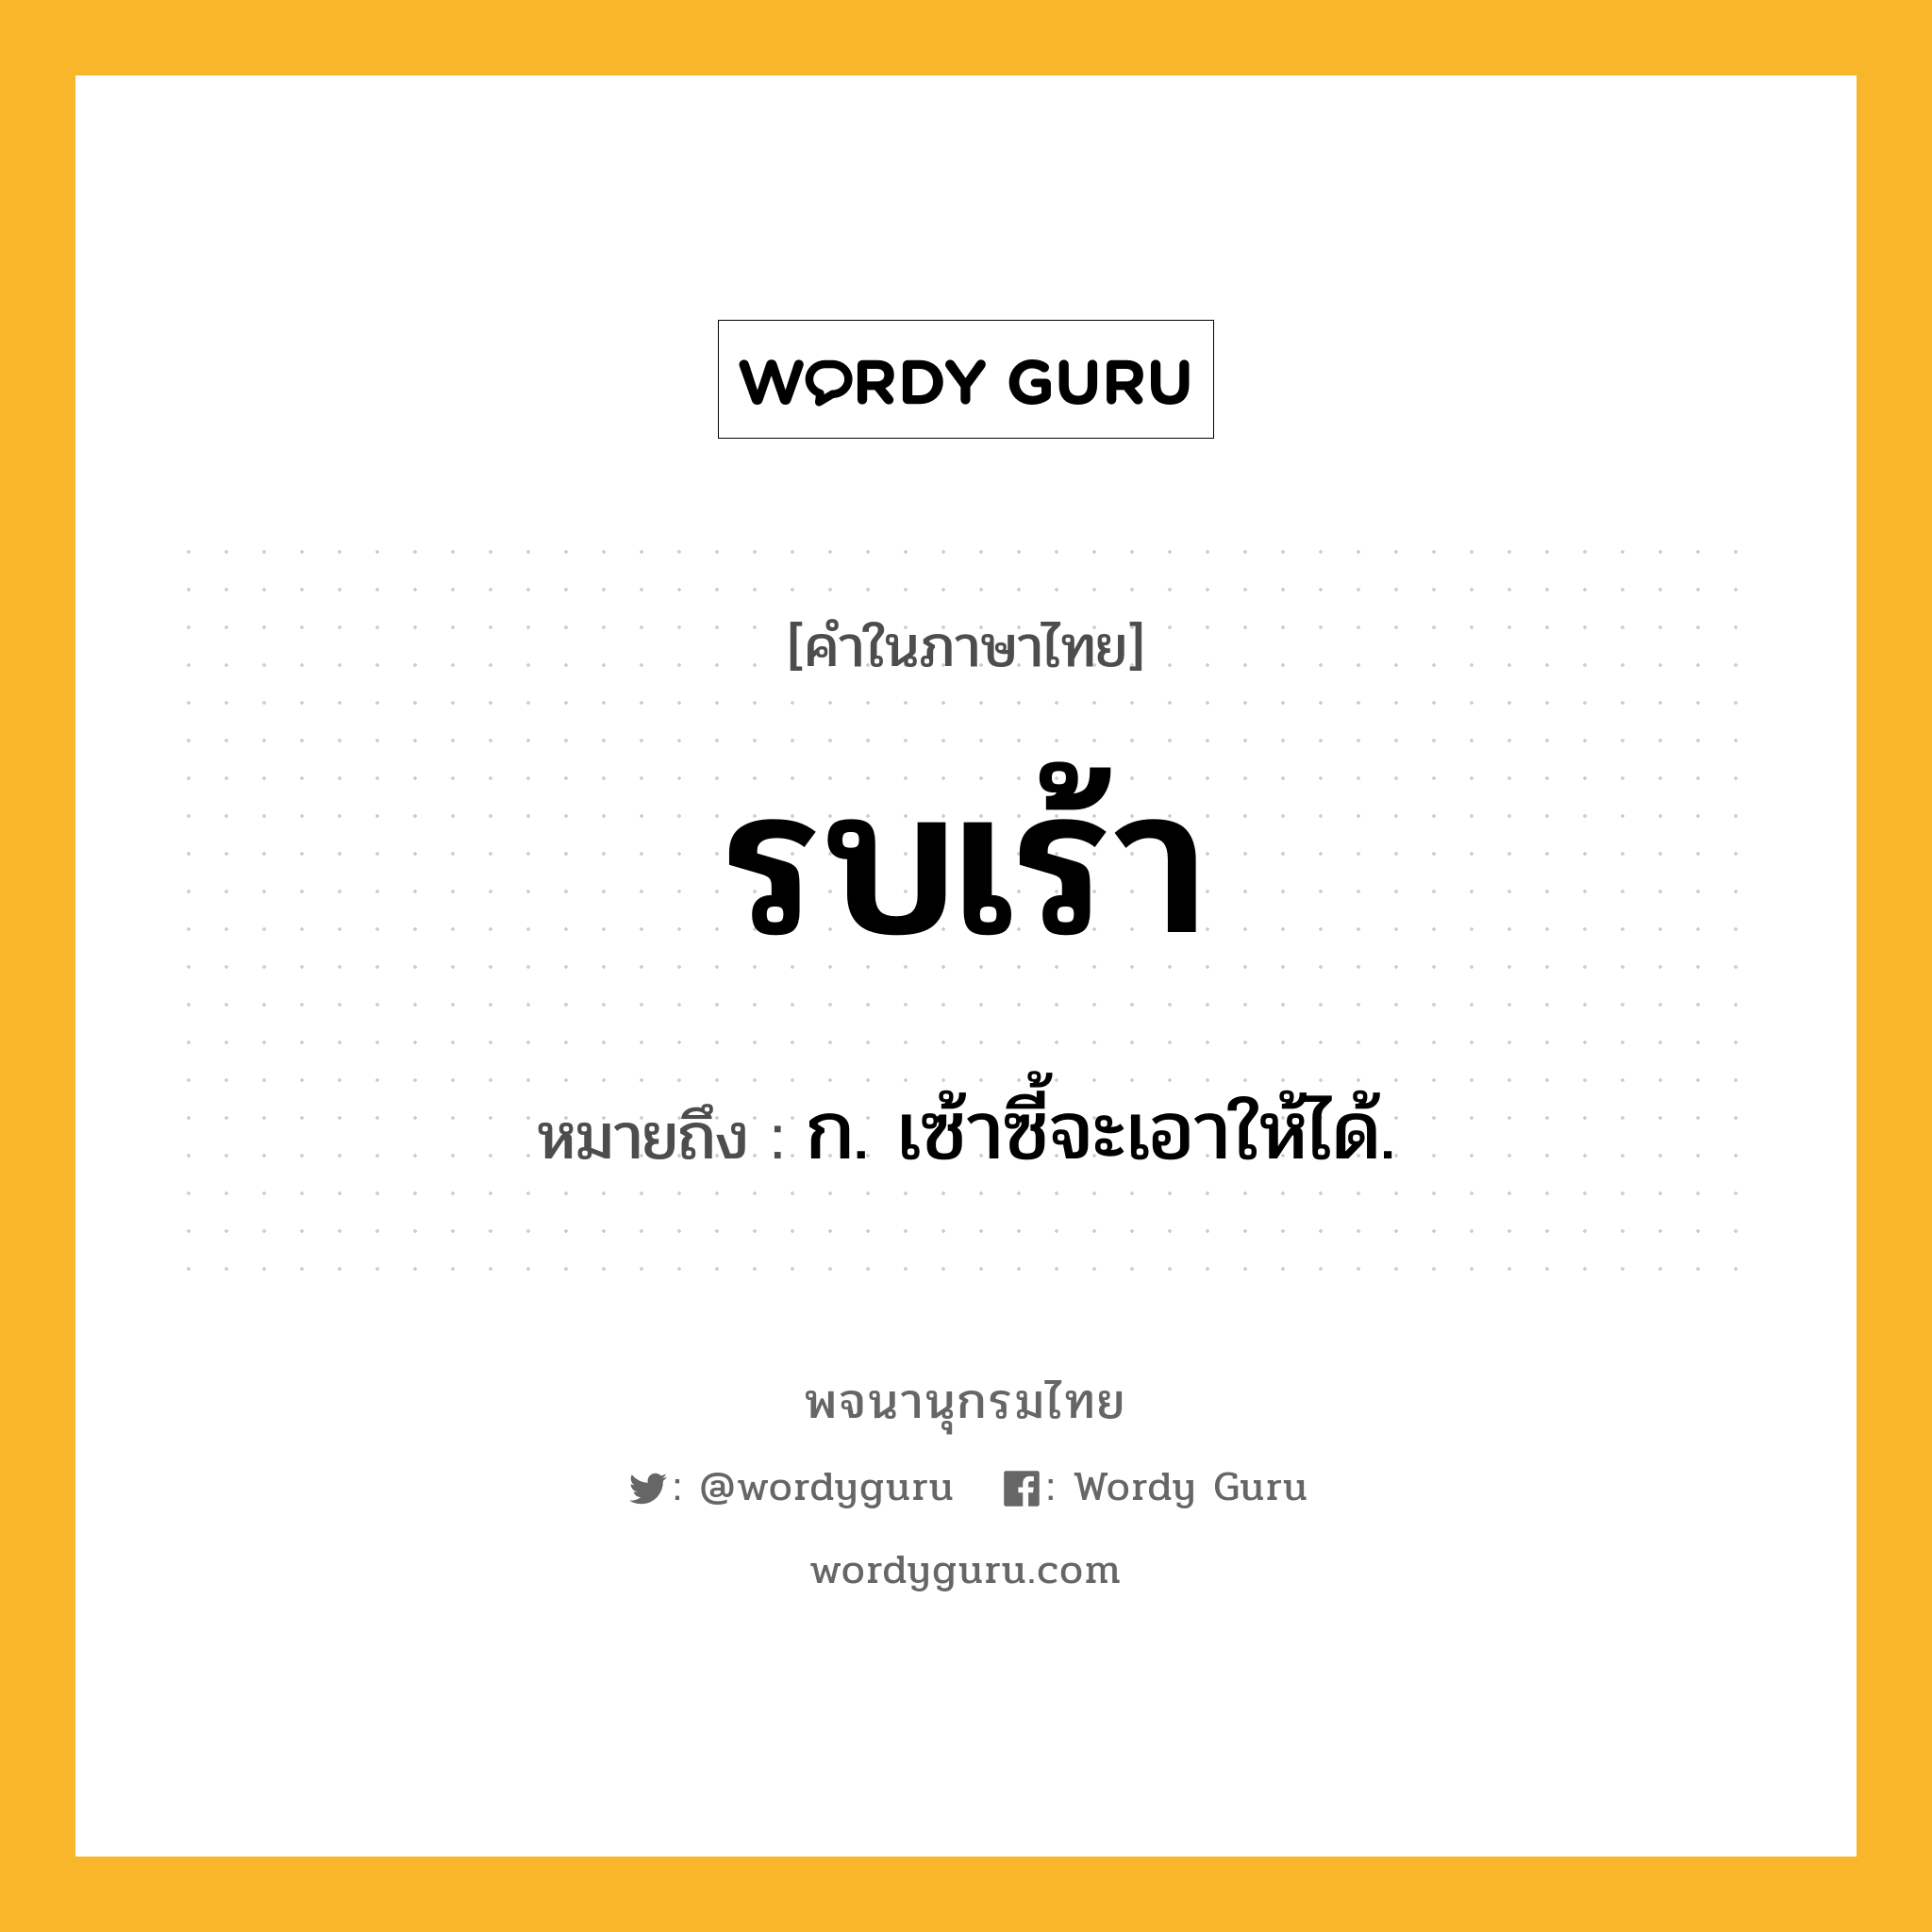 รบเร้า หมายถึงอะไร?, คำในภาษาไทย รบเร้า หมายถึง ก. เซ้าซี้จะเอาให้ได้.